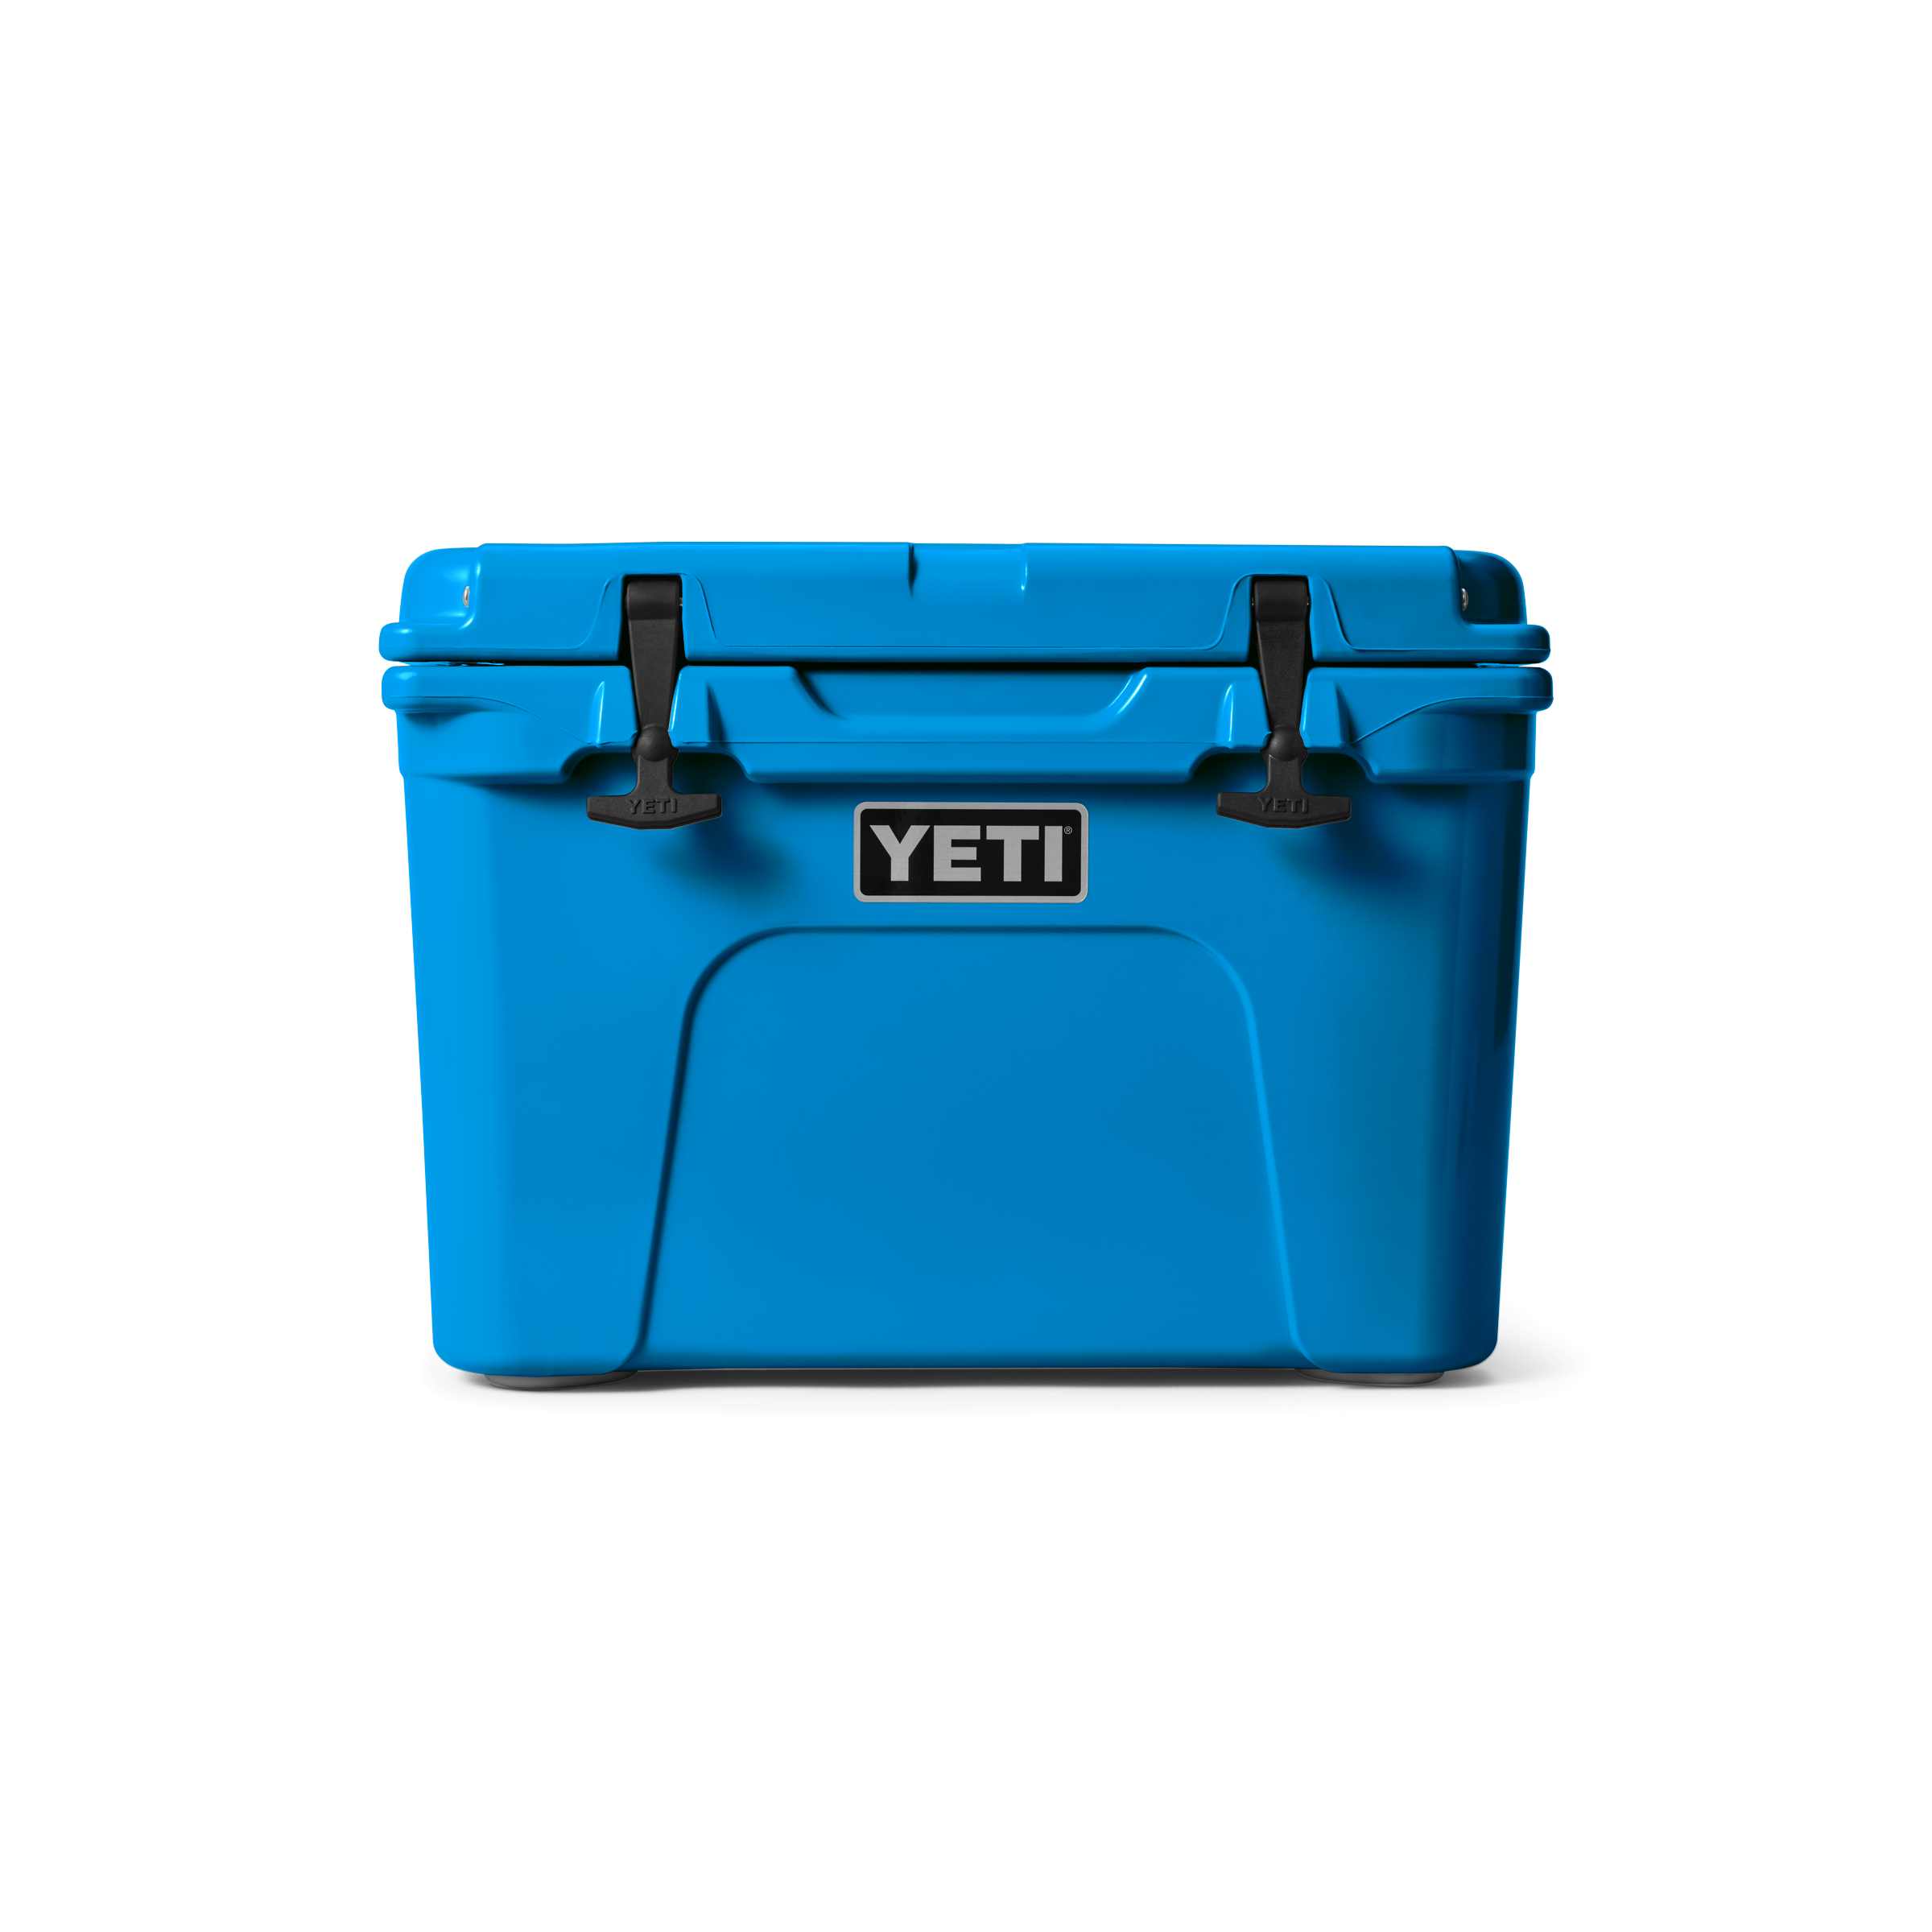 YETI Tundra® 35 Cool Box Big Wave Blue